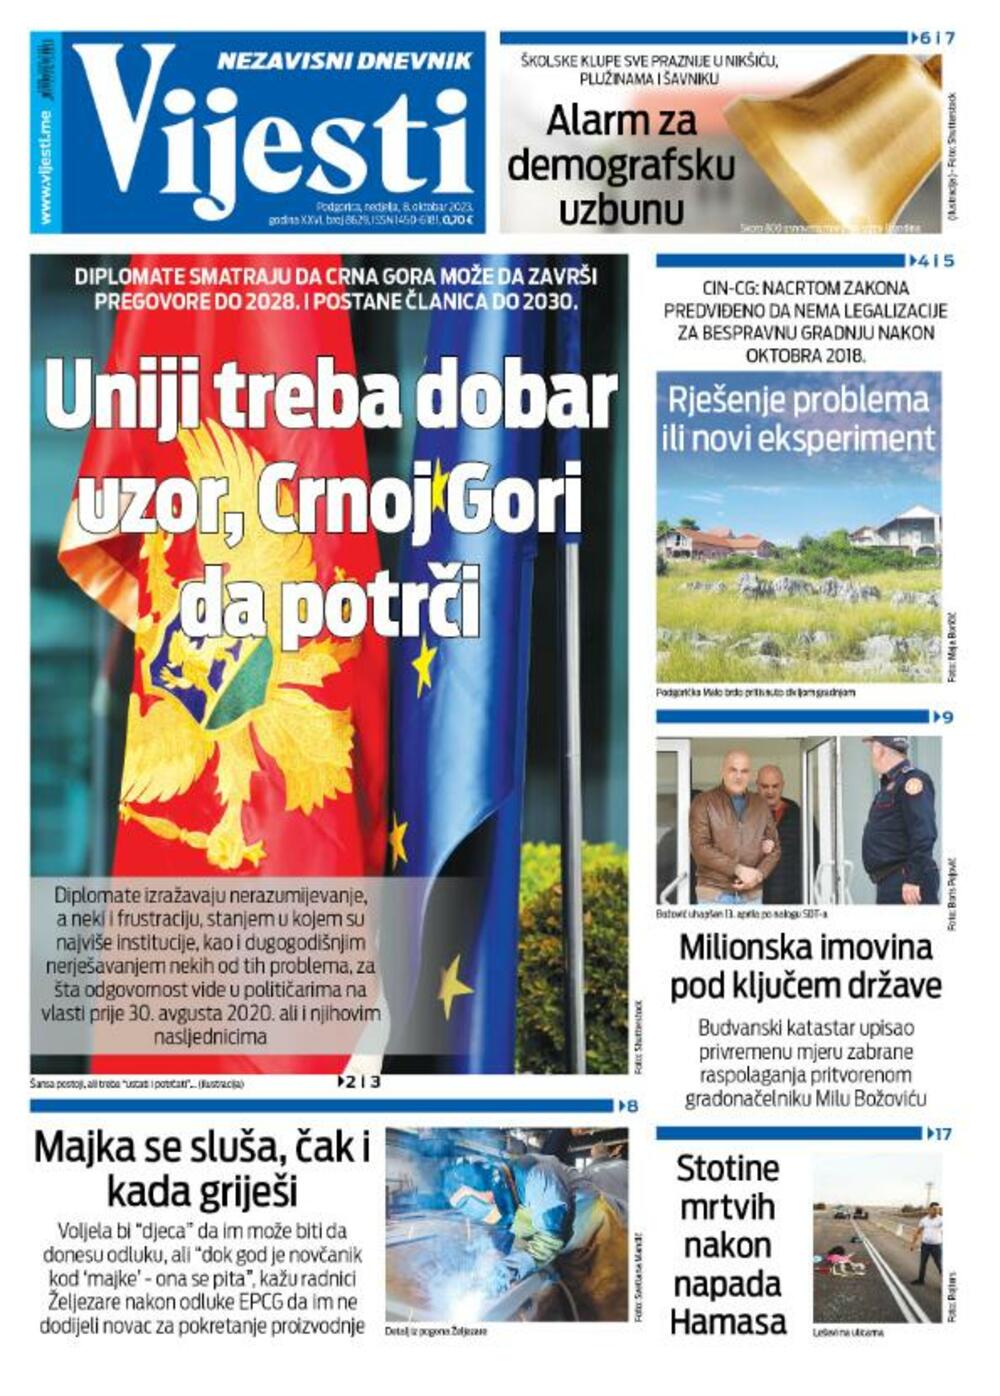 Naslovna strana "Vijesti" za 8. oktobar 2023., Foto: Vijesti